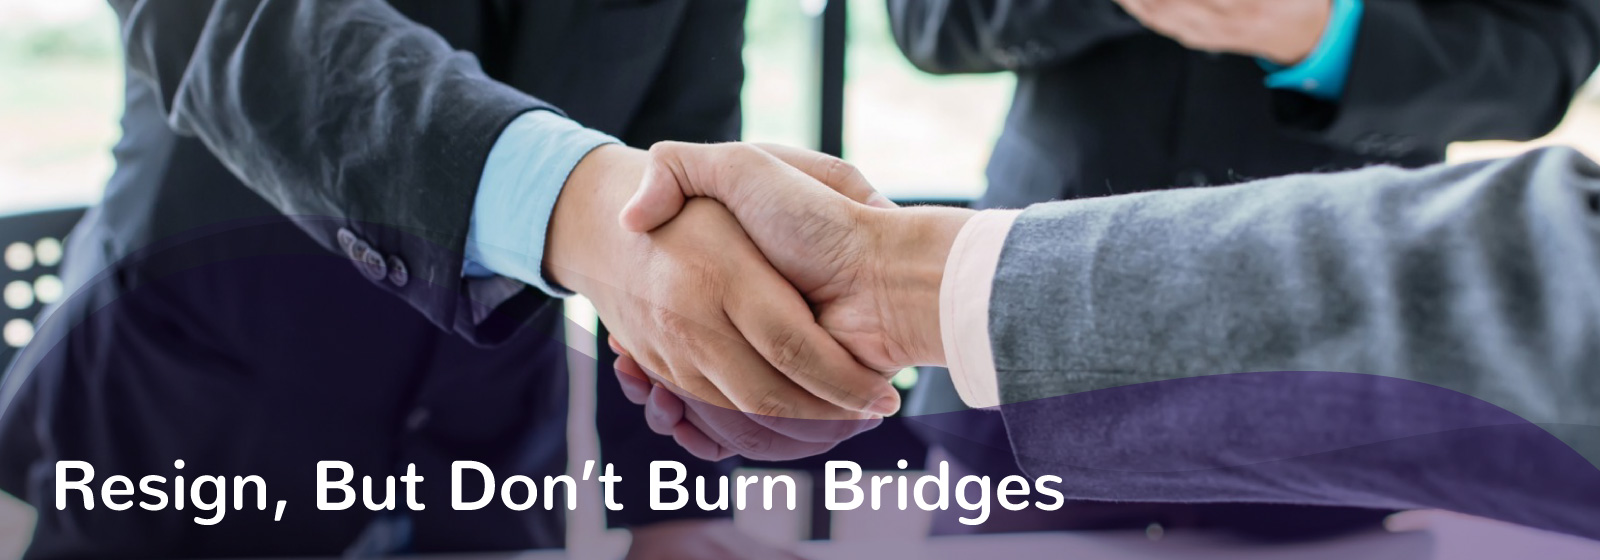 Resign but do not burn bridges quote